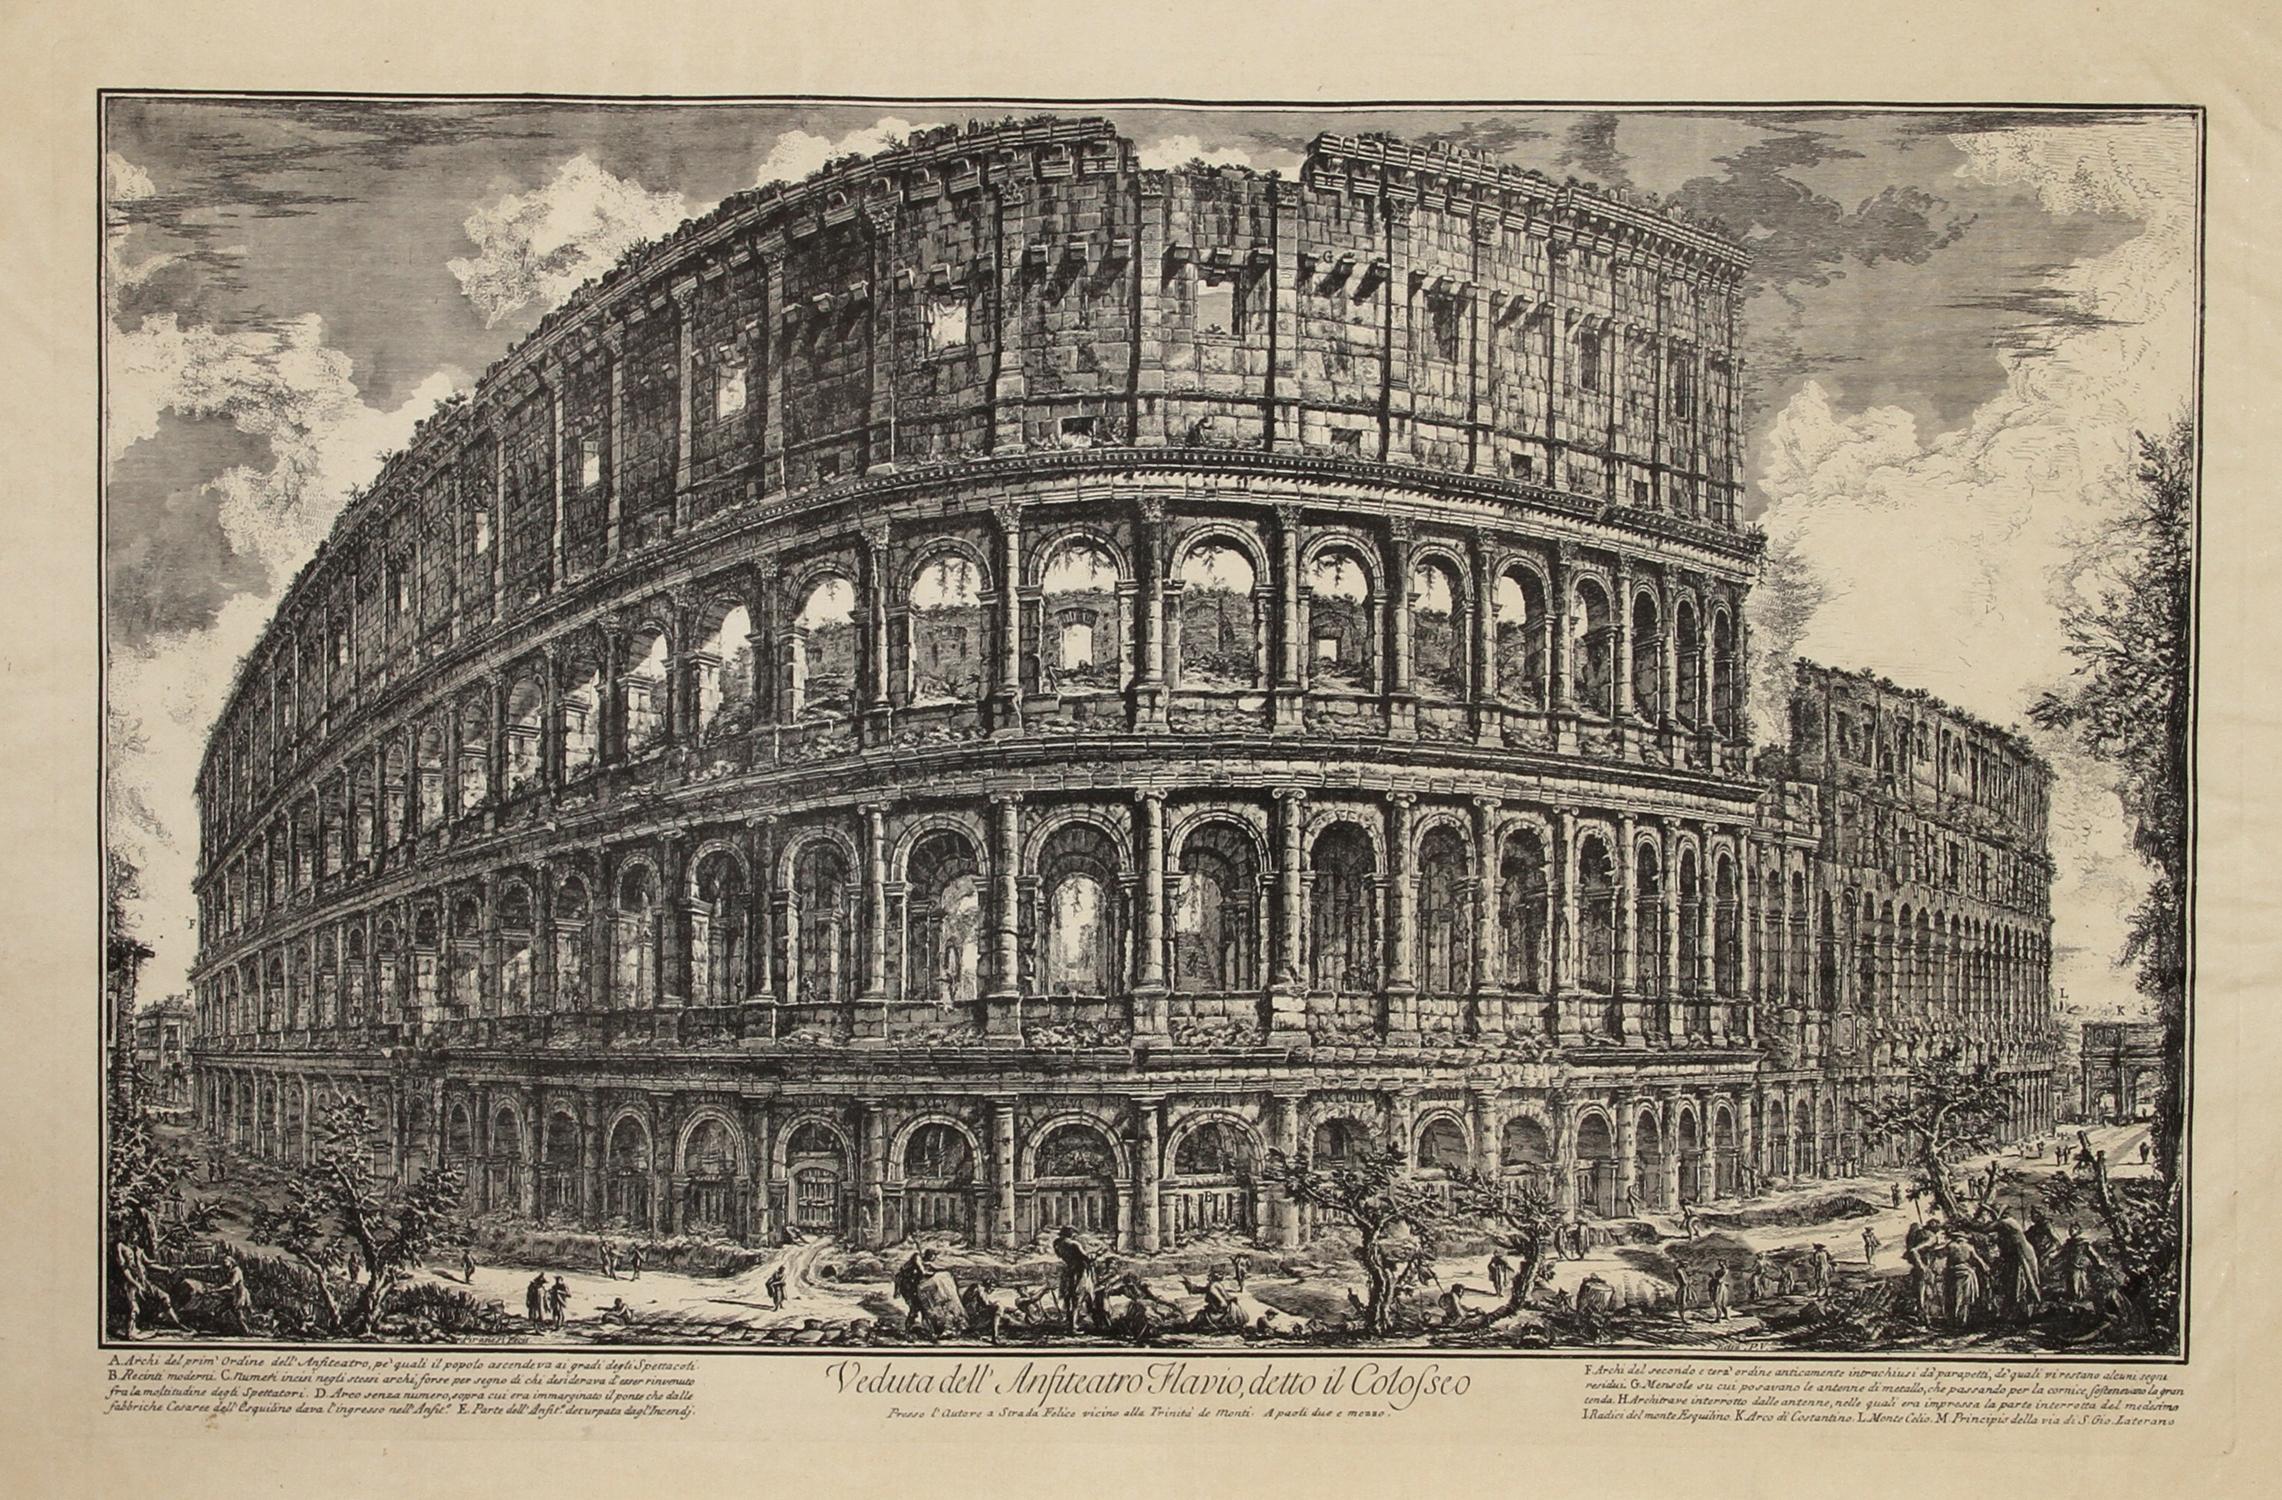 Giovanni Battista Piranesi Landscape Print - The Colosseum from Piranesi's Vedute di Roma